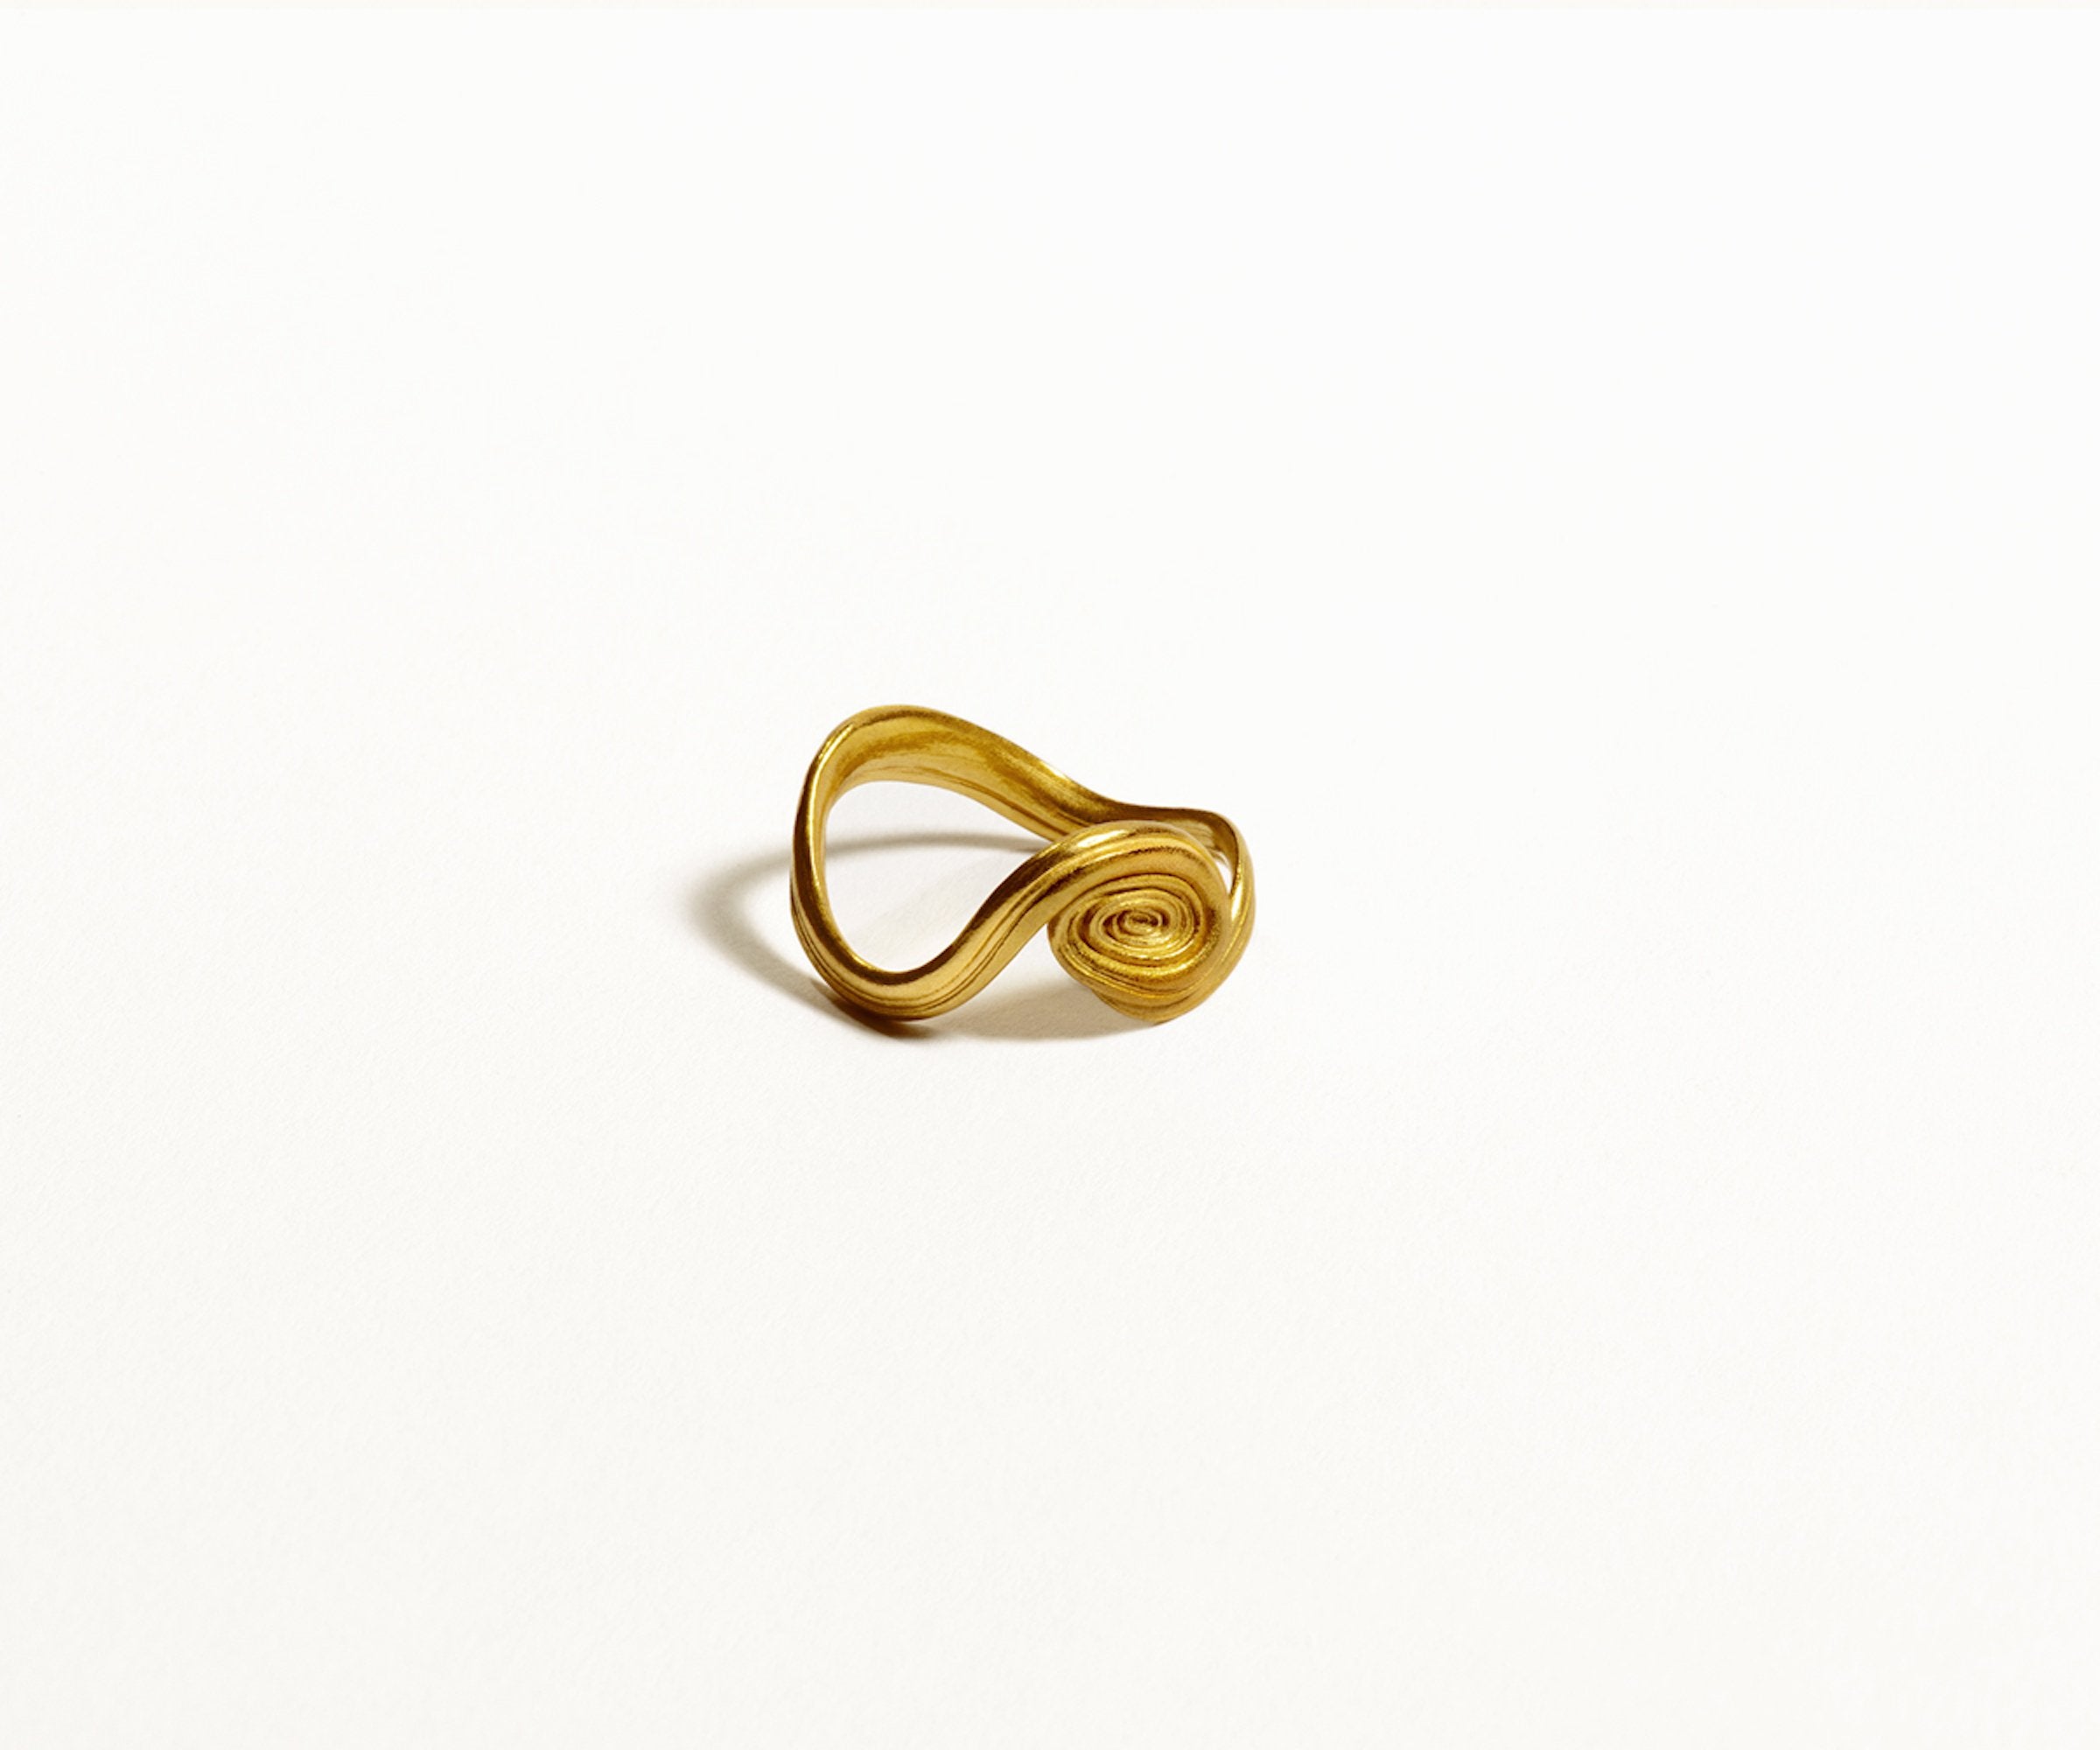 Arje Griegst Jewellery Jewelry Gold Diamonds Denmark Smykker Ring spiral